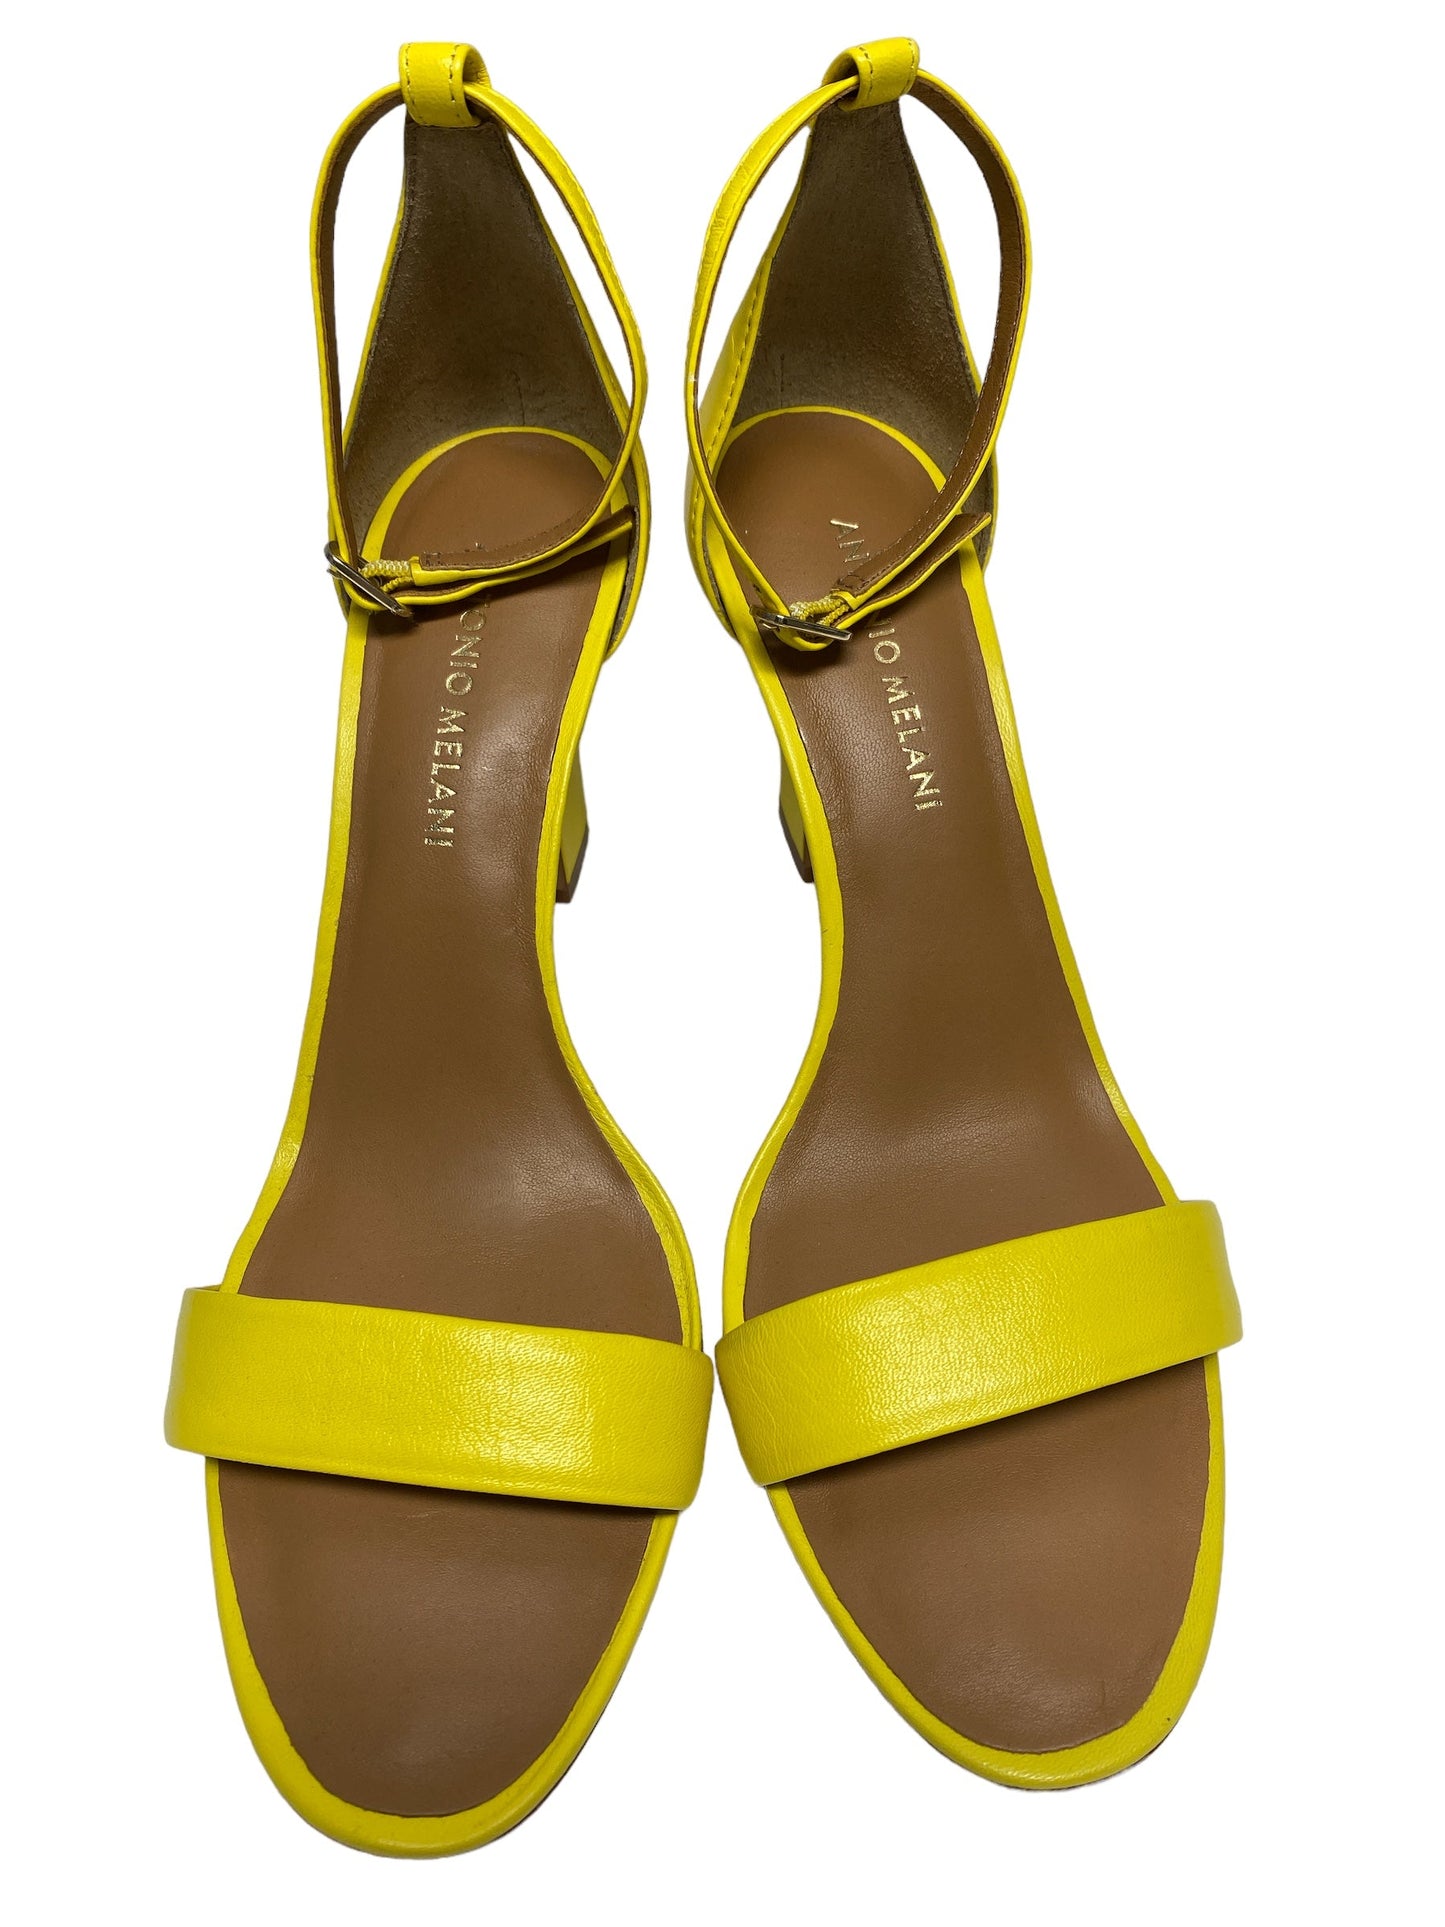 Sandals Heels Stiletto By Zara  Size: 10